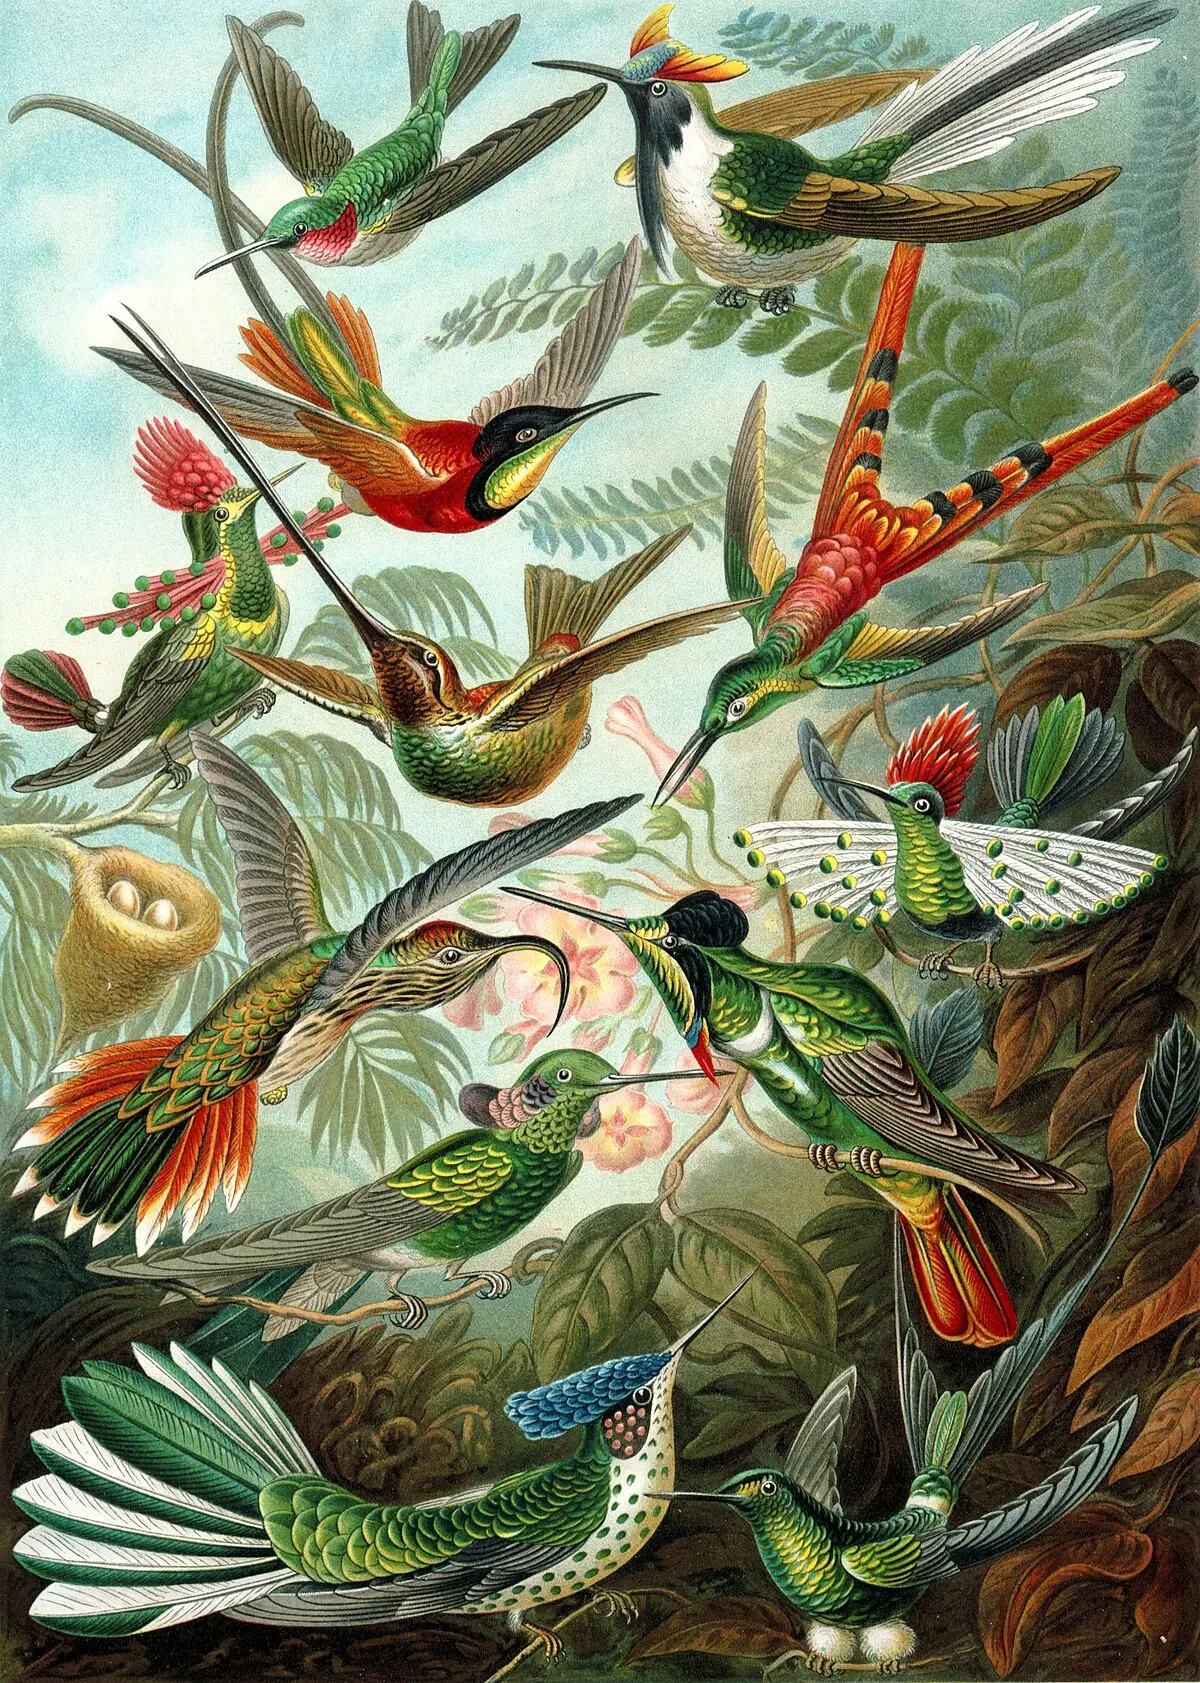 fiore colibrì - Che caratteristiche ha il colibrì